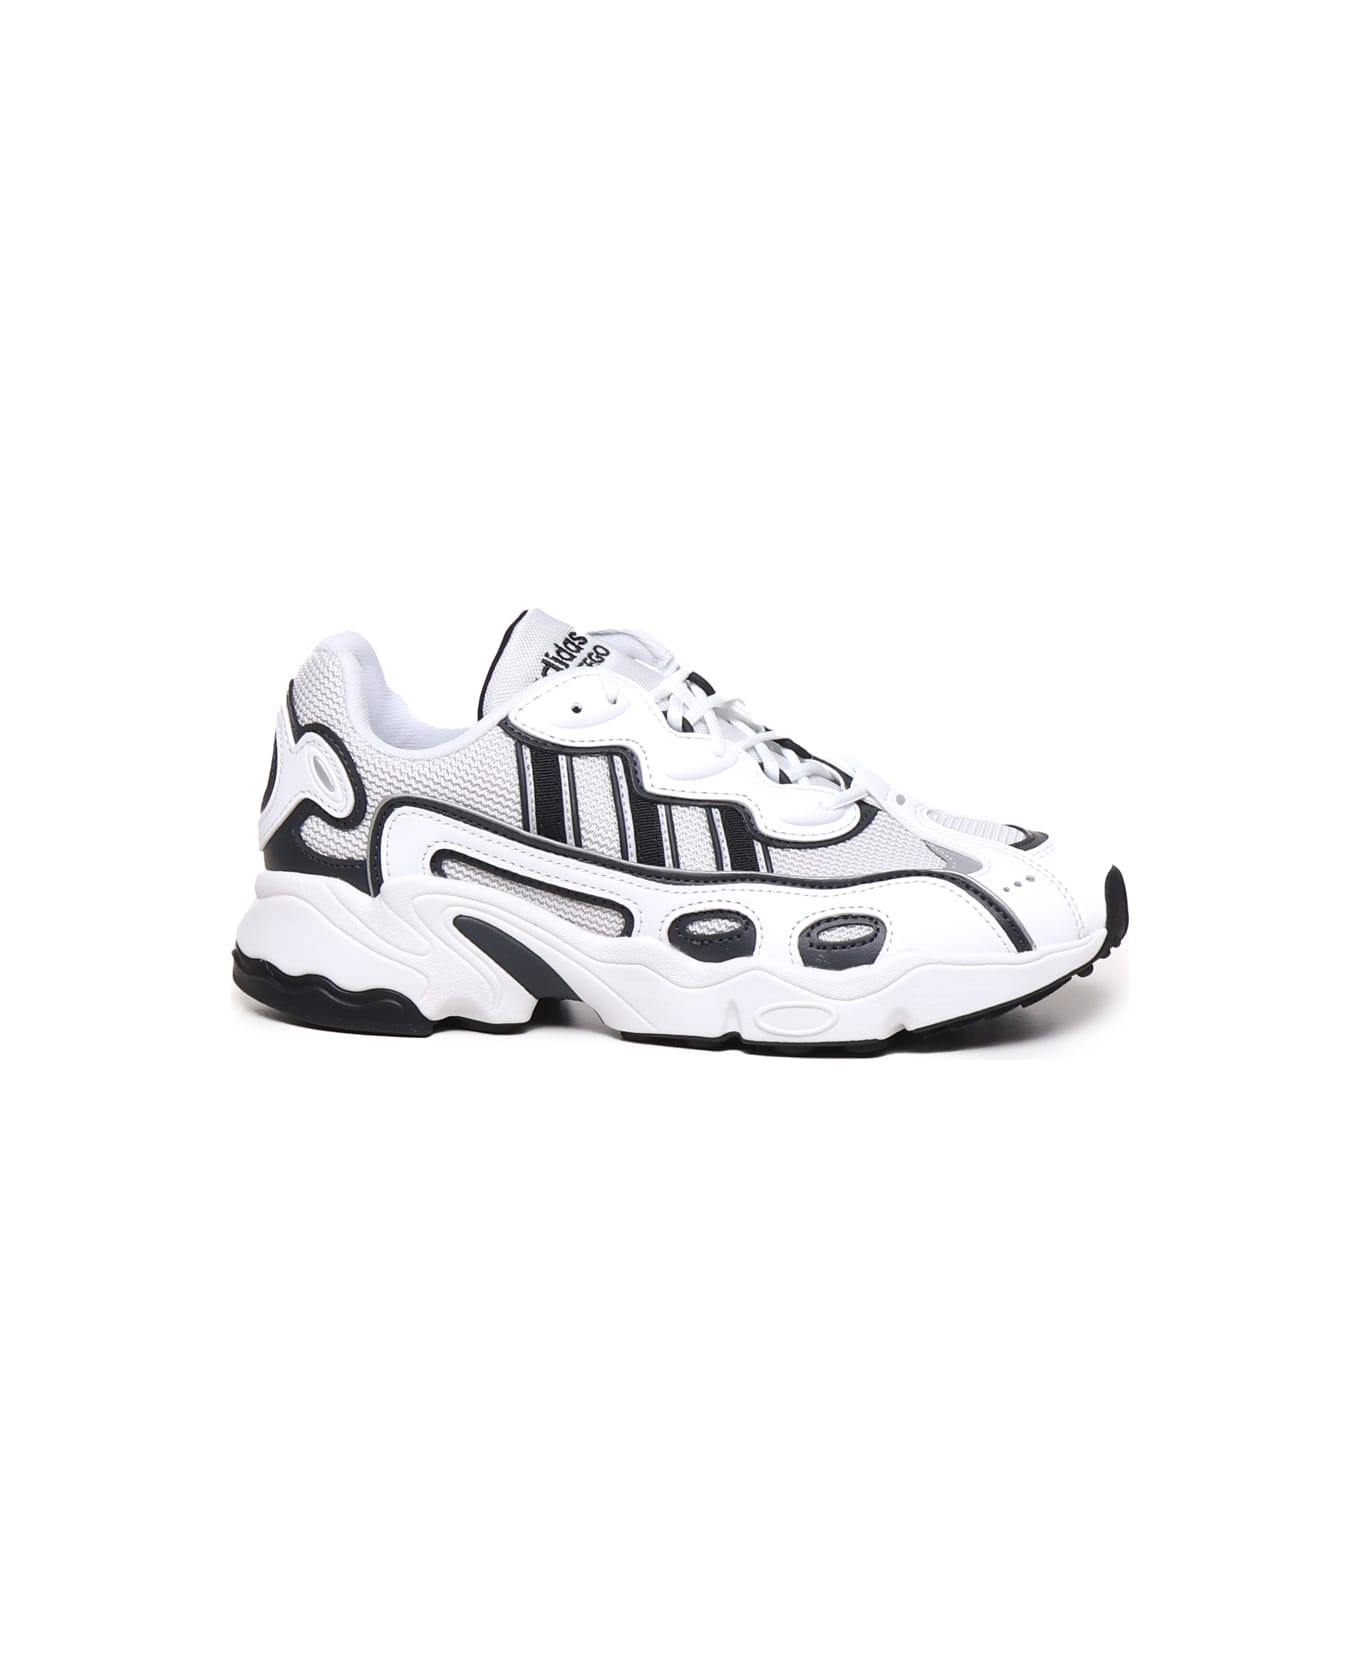 Adidas Originals Ozweego Og Shoes - White, black